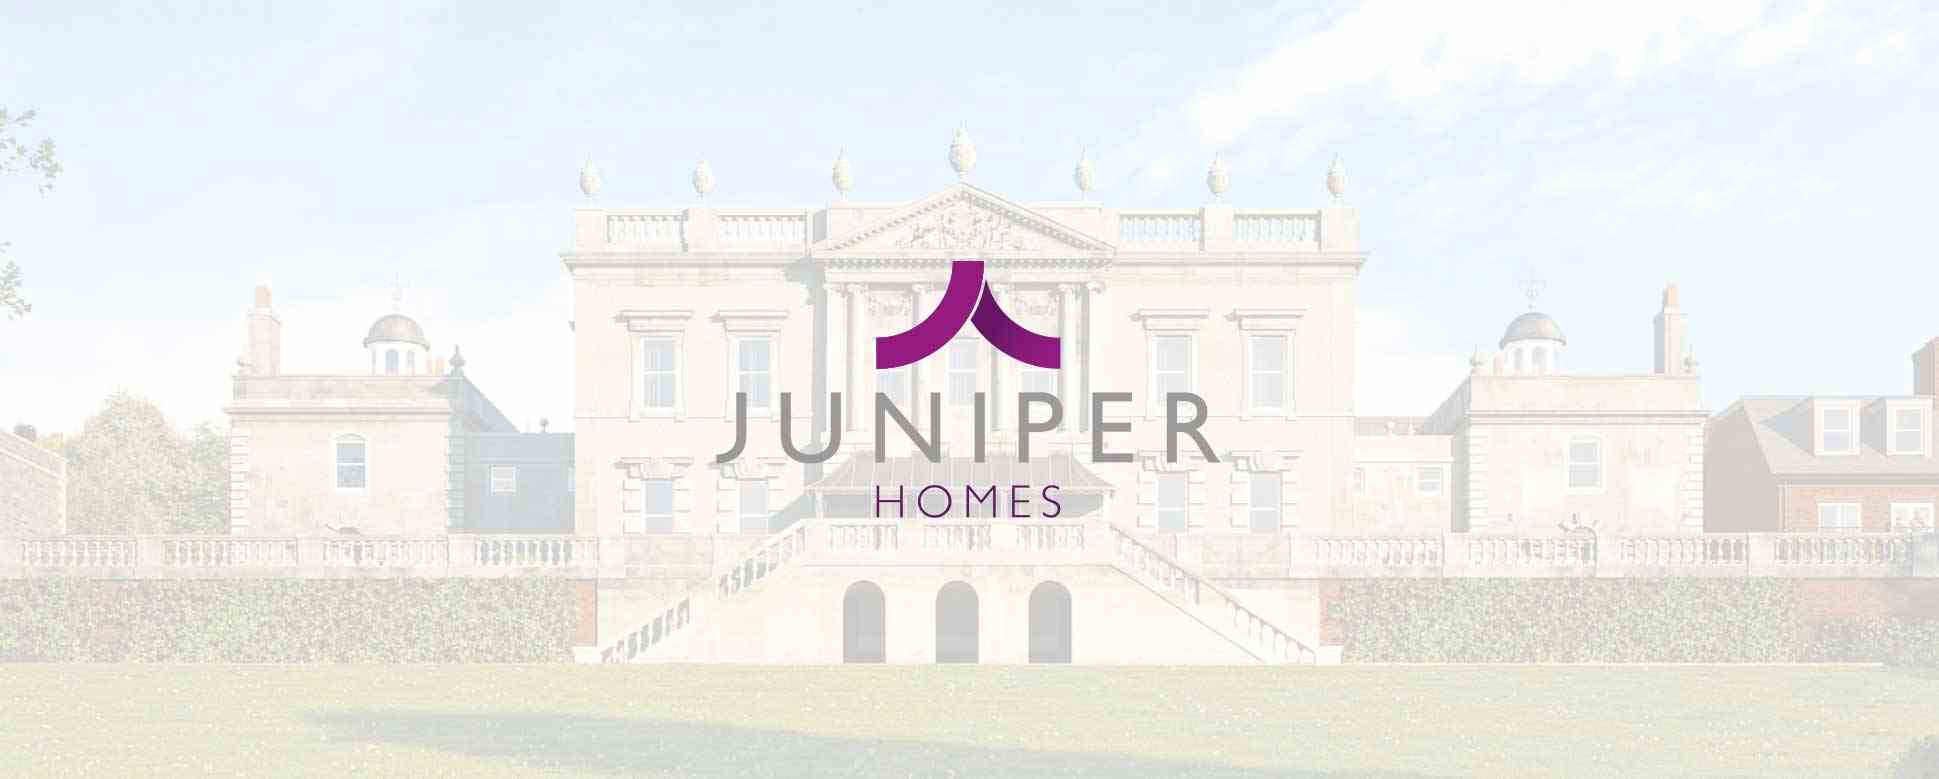 Meet the Developer – Juniper Homes